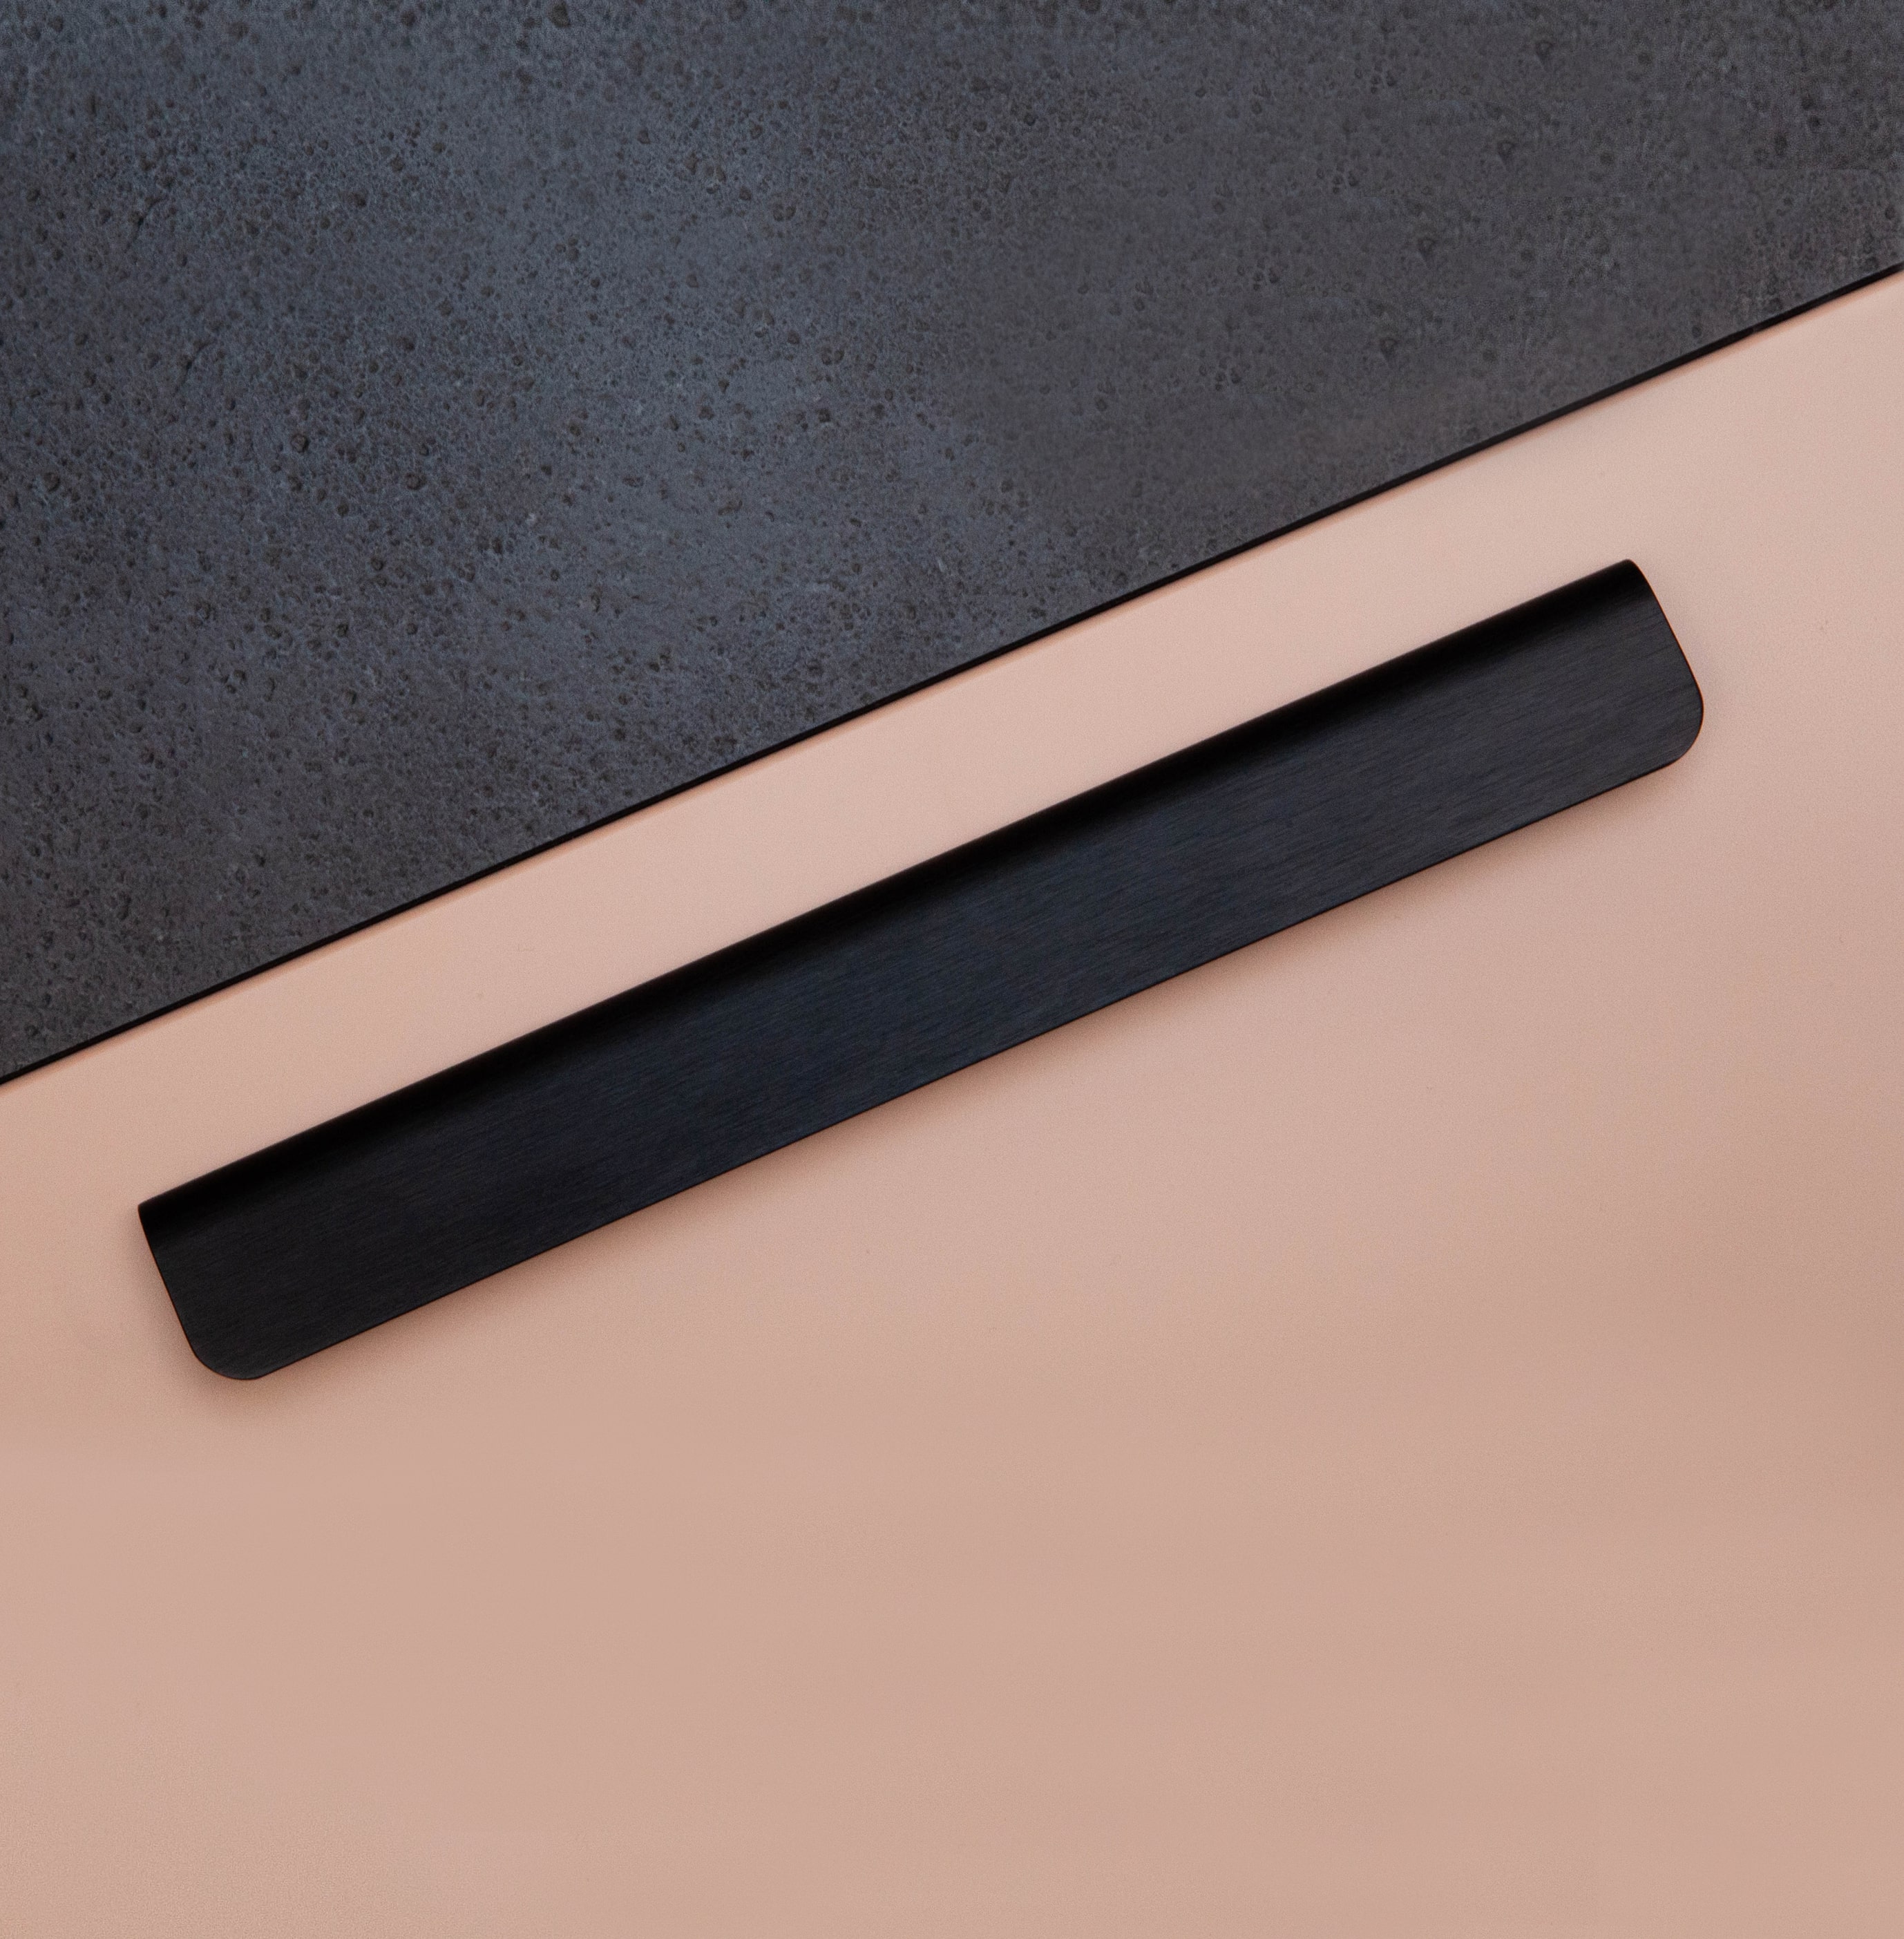 Poignée Poignée Fall, couleur Noir mat, ref 370195-11, dimensions 236 x 20 mm